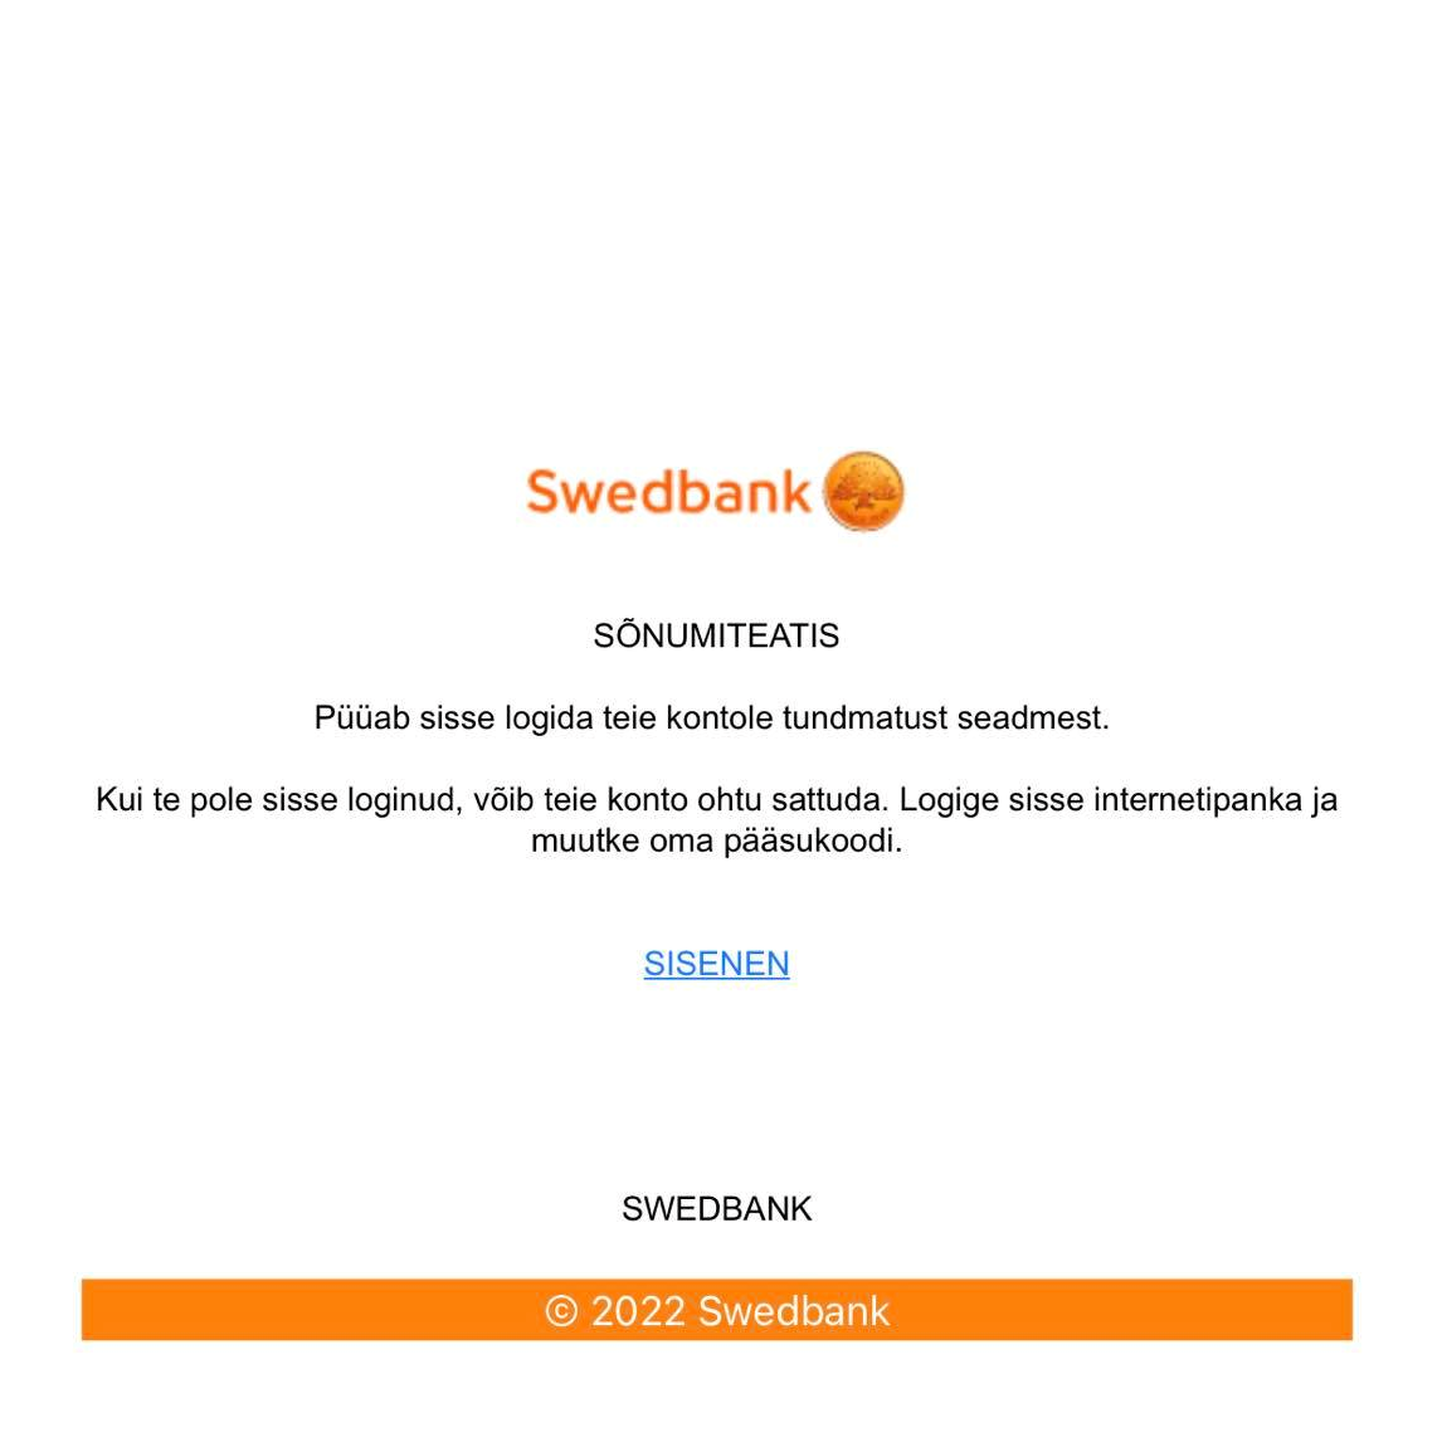 В Сети распространяются письма от мошенников, отправитель которых якобы Swedbank.